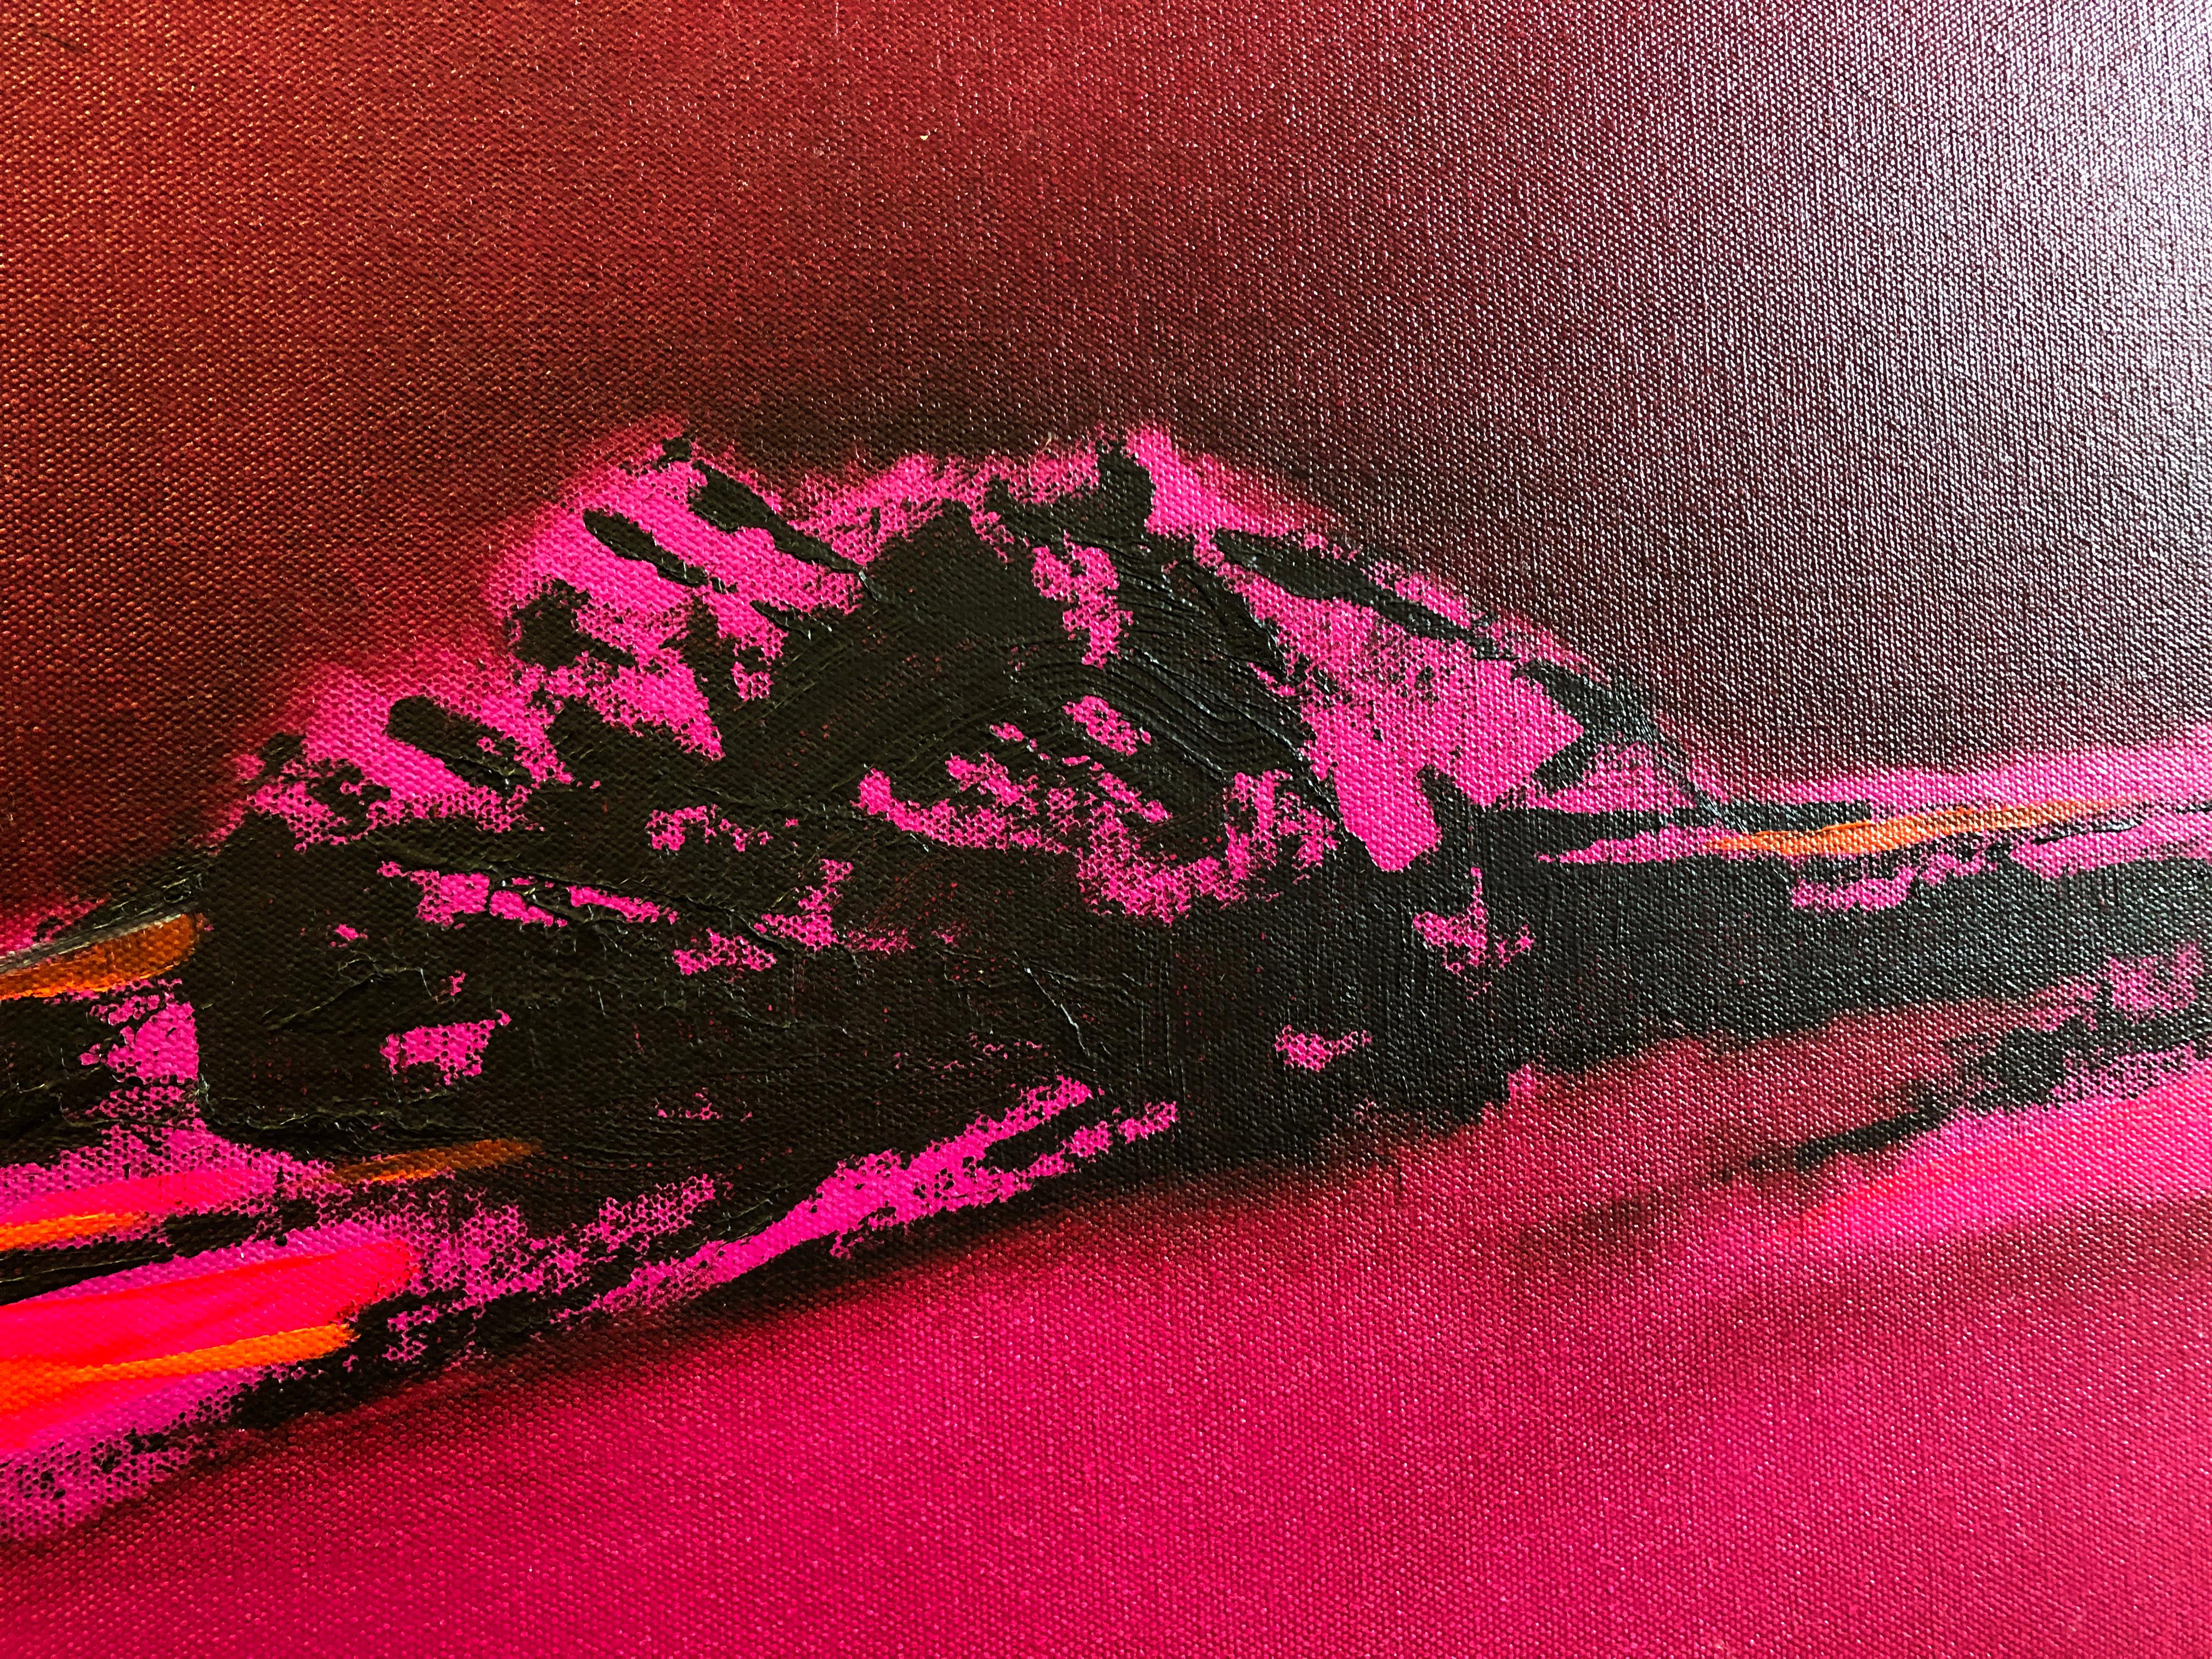 Rosa Blazing - Hommage an Patagonien, abstrakte Landschaft in leuchtenden, kräftigen Farben 4